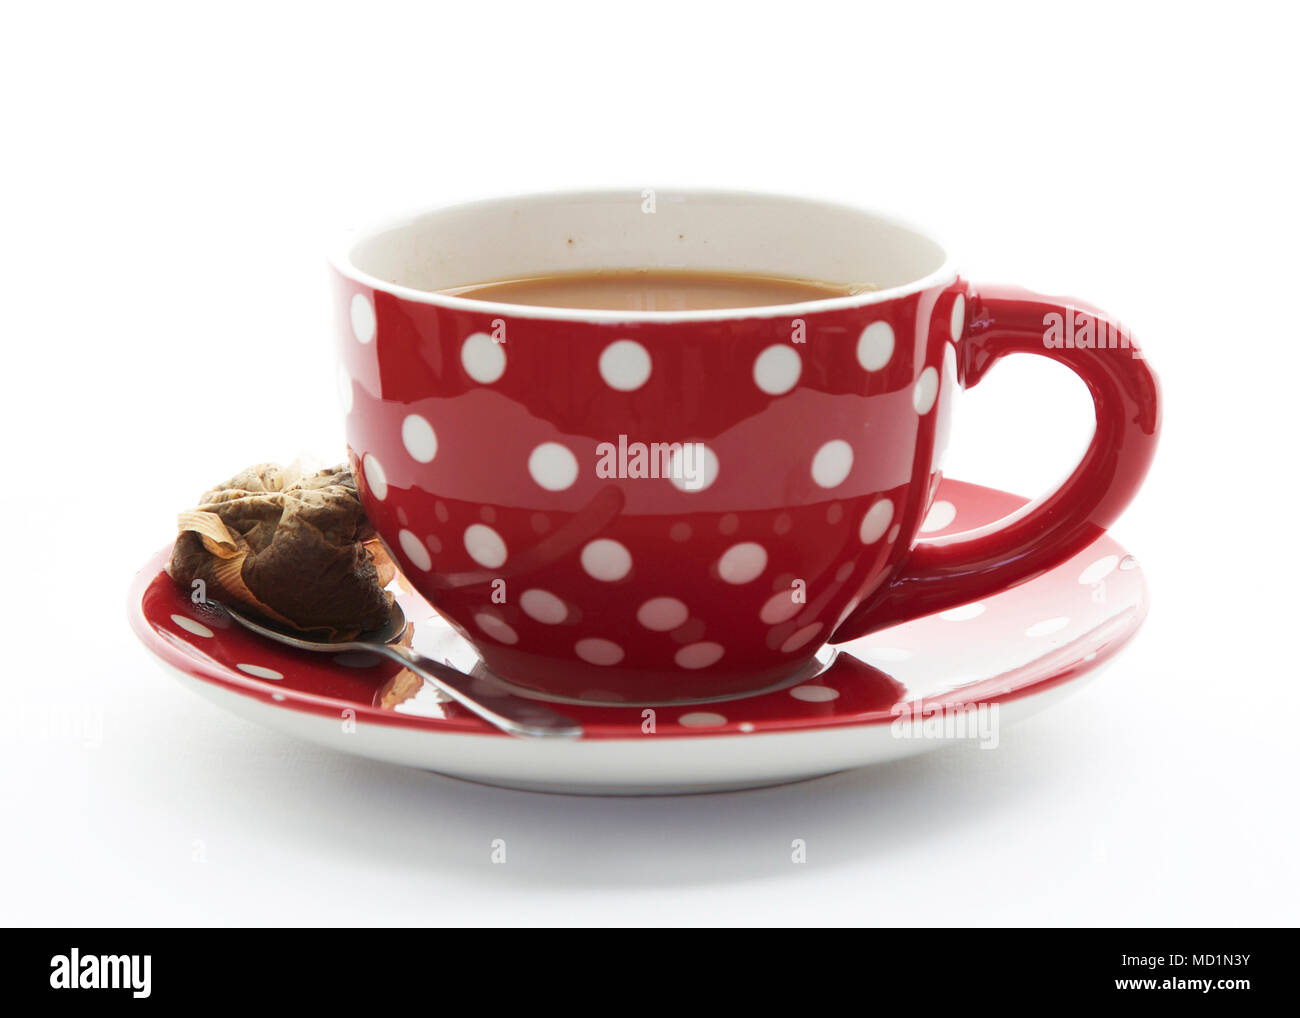 Grande tasse de thé dans une tasse rouge à pois blancs Photo Stock - Alamy